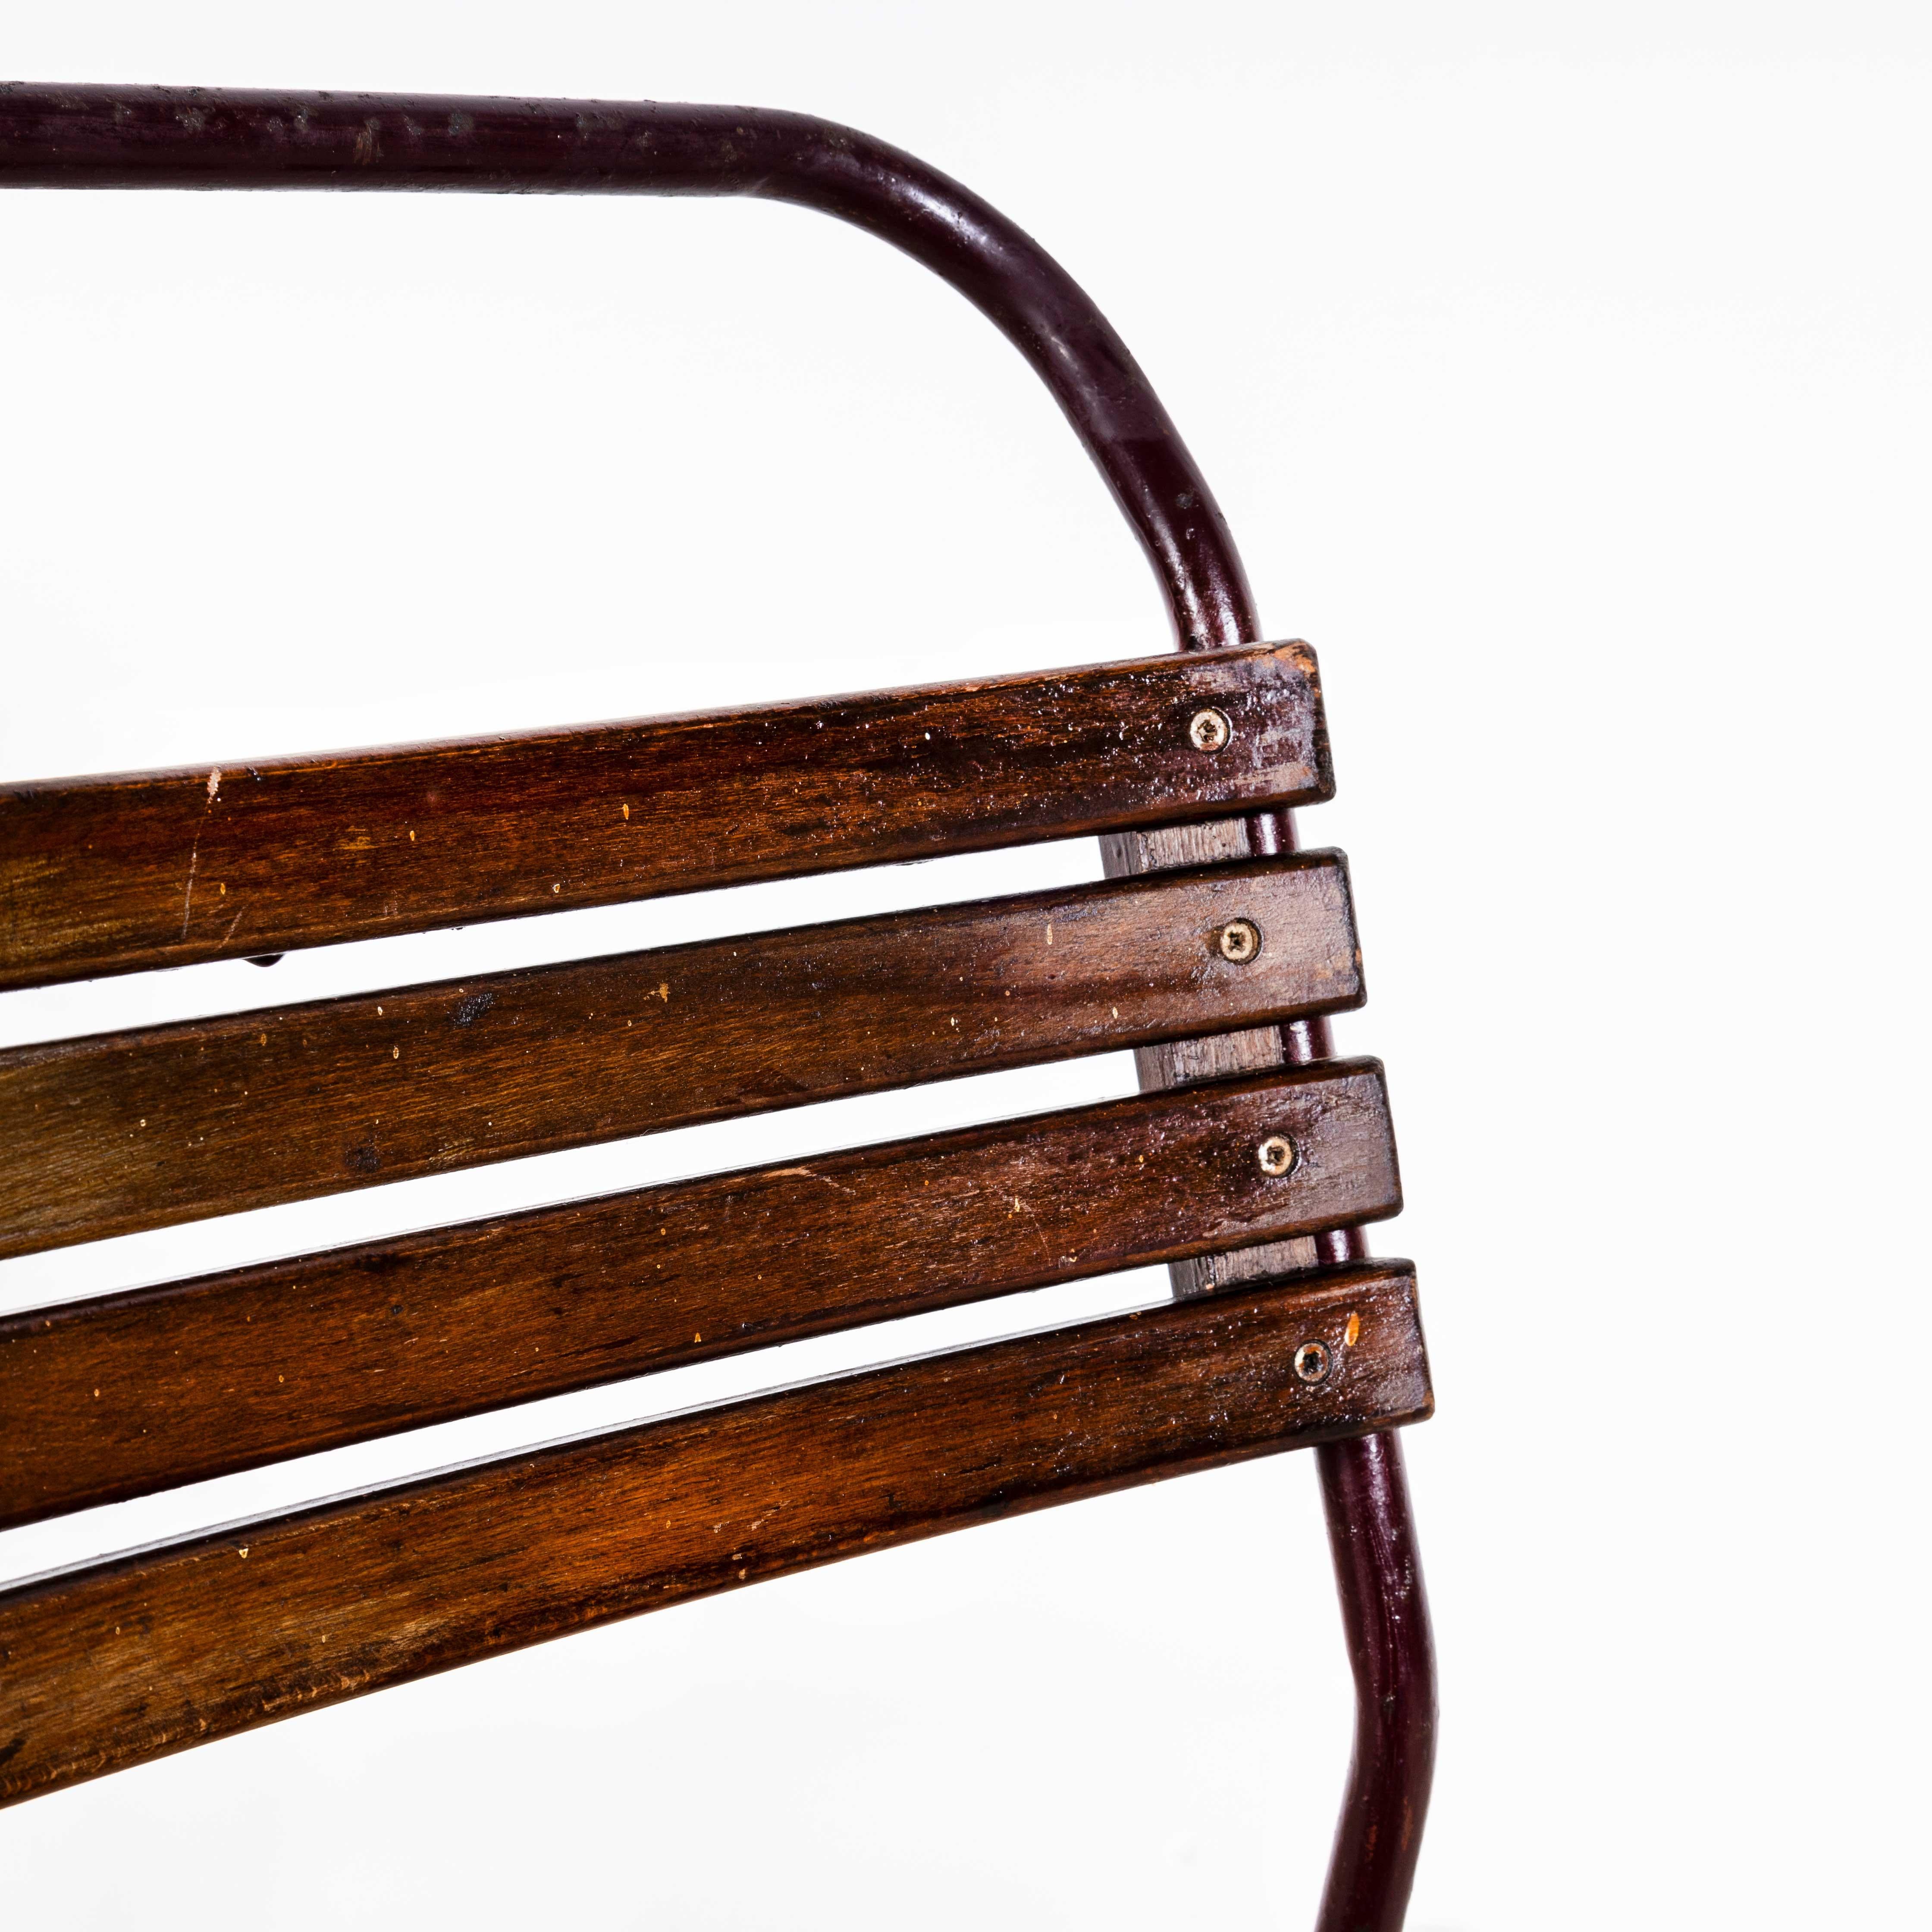 1950's Cox Metallrohr Lattenrost Esszimmerstühle - Gute Menge verfügbar
1950's Cox Tubular Metal Slatted Dining Chairs - Gute Menge verfügbar. Cox war einer der größten Hersteller von Stapelrohrstühlen, die ursprünglich von der Bauhaus-Bewegung